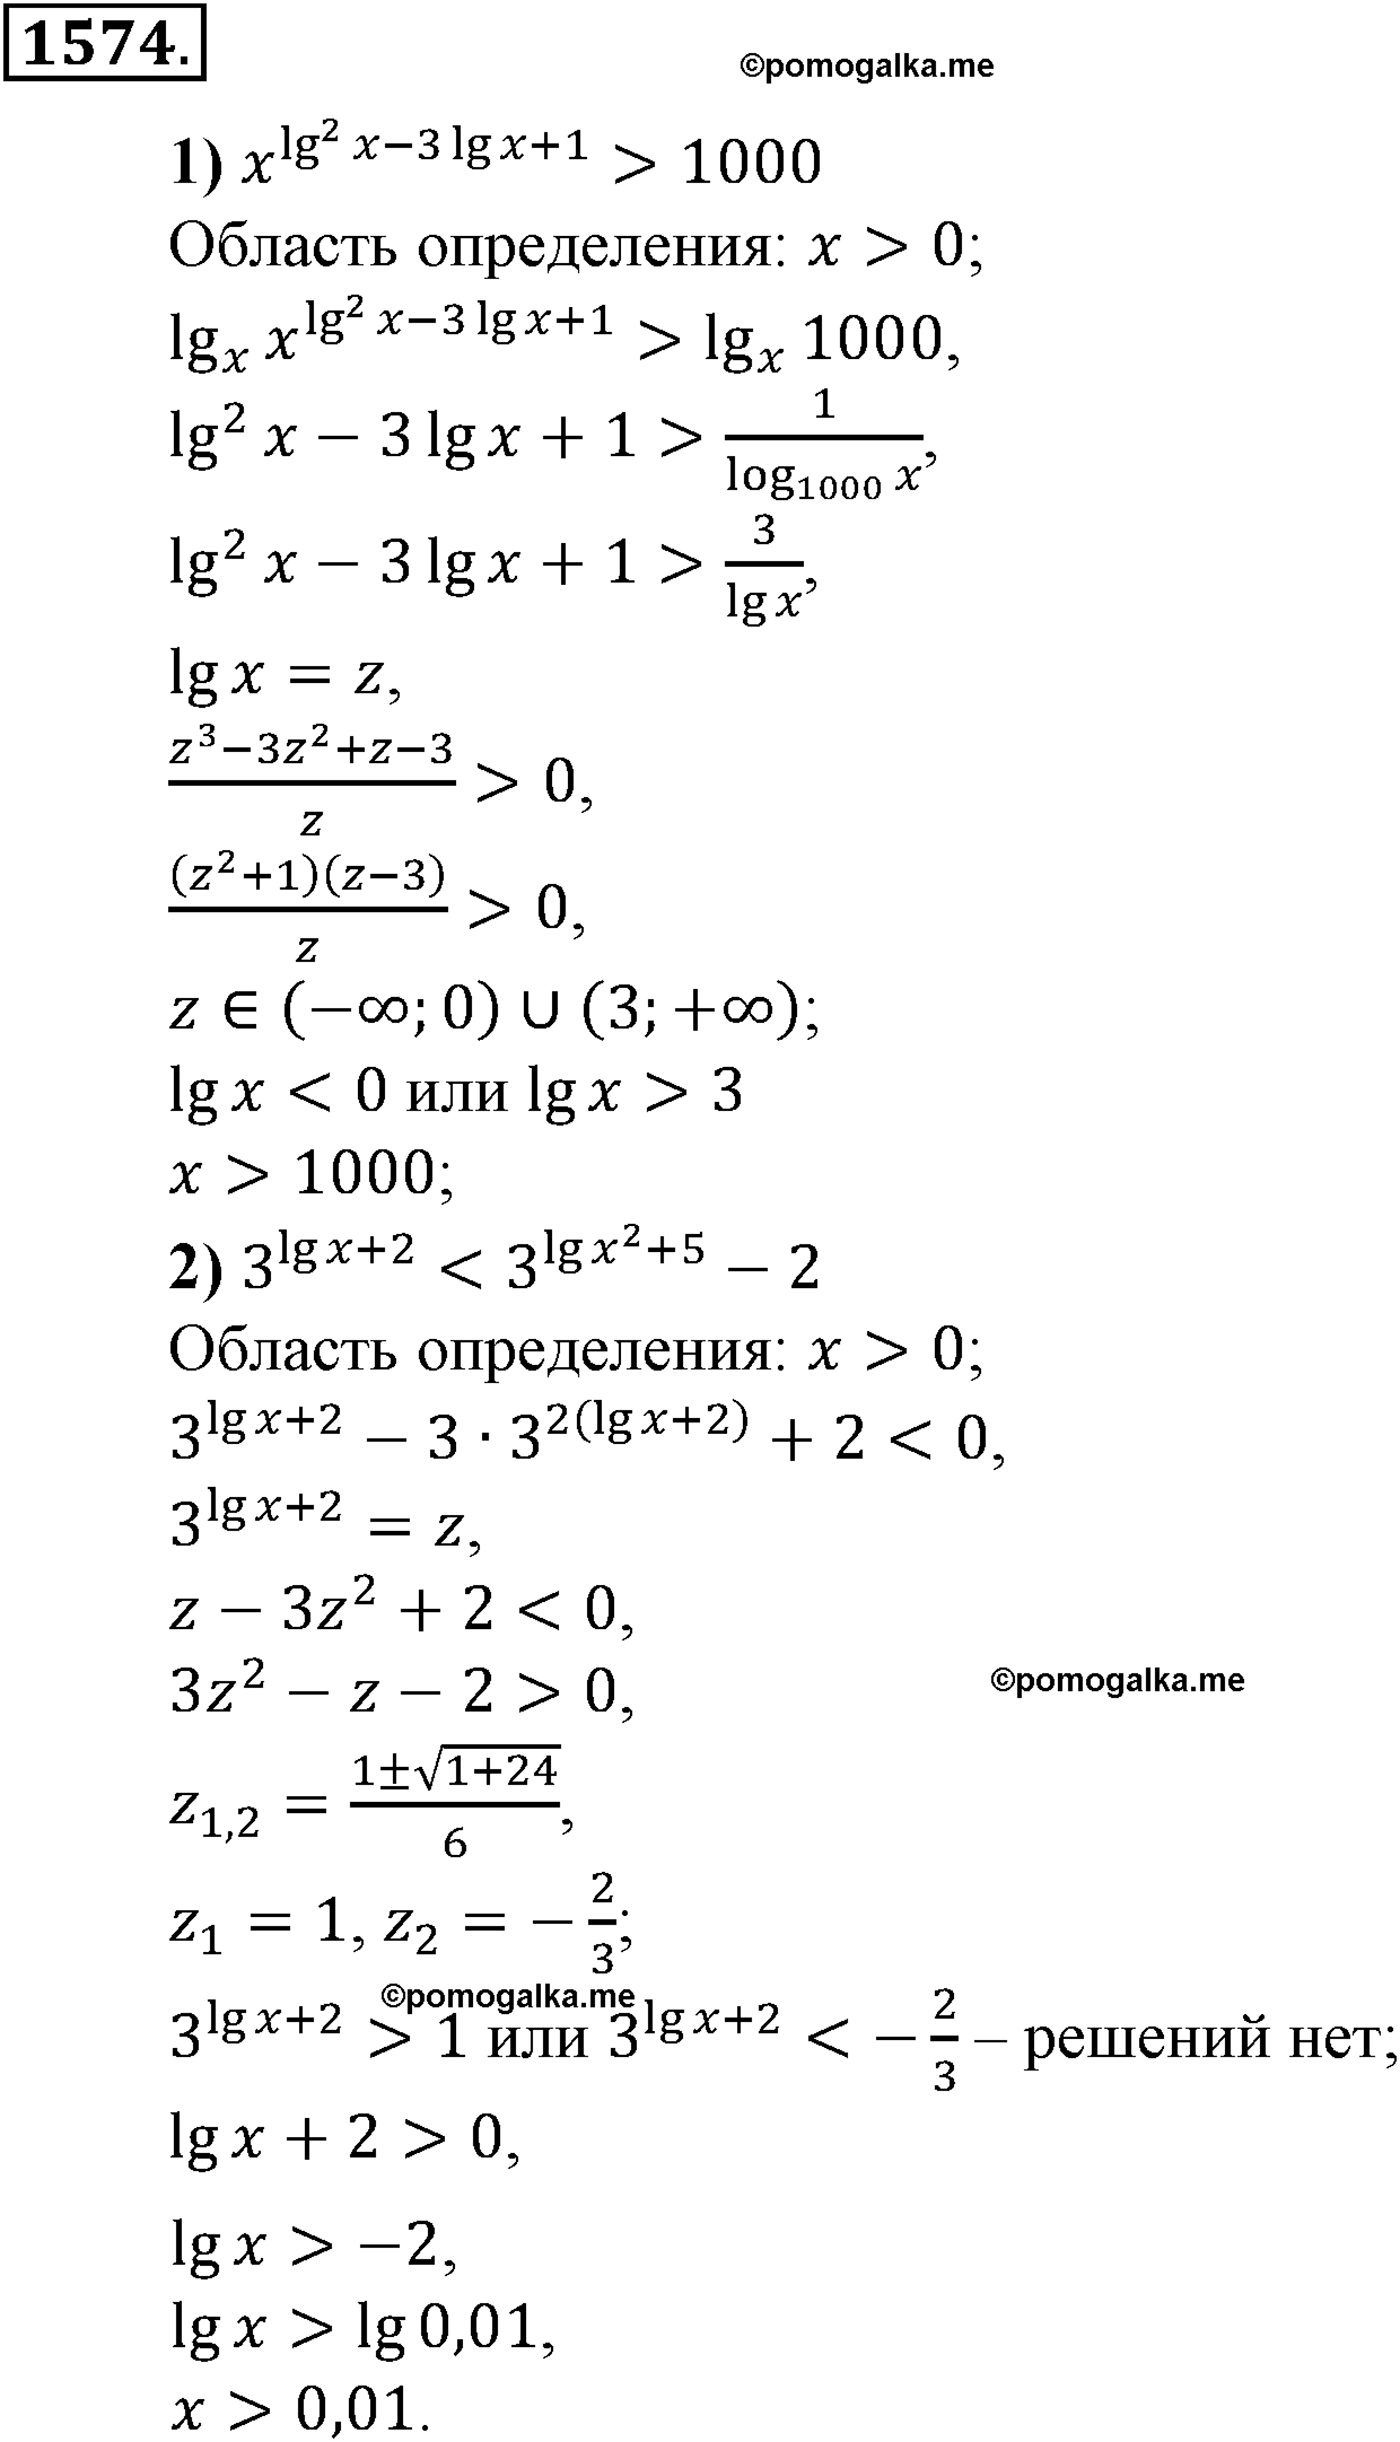 разбор задачи №1574 по алгебре за 10-11 класс из учебника Алимова, Колягина